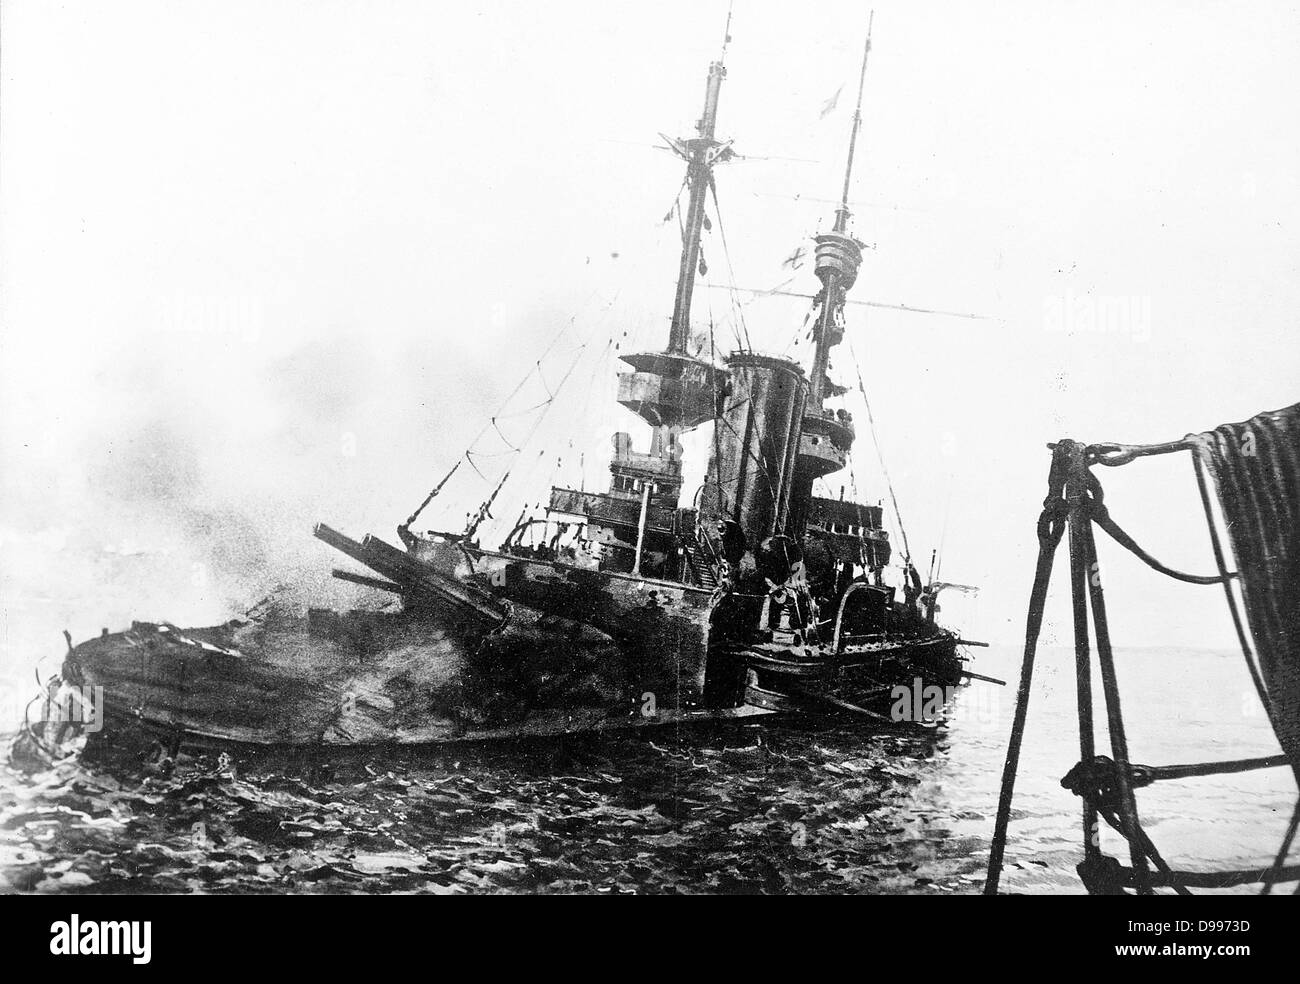 HMS unwiderstehlich wurde im Oktober 1901 abgeschlossen. Während des Ersten Weltkrieges am 18 Mar 1915, unwiderstehliche nahmen an der Bombardierung der Verengt (wo die Wasserstraße verengt sich zu 1,6 km in der Breite) Festungen von Çanakkale und Kilitbahir. Unwiderstehlich wurde stark beschädigt, wenn Sie eine Mine getroffen. Sie hilflos in der türkischen Kanonen, die ein schweres Feuer auf Ihr Stockfoto